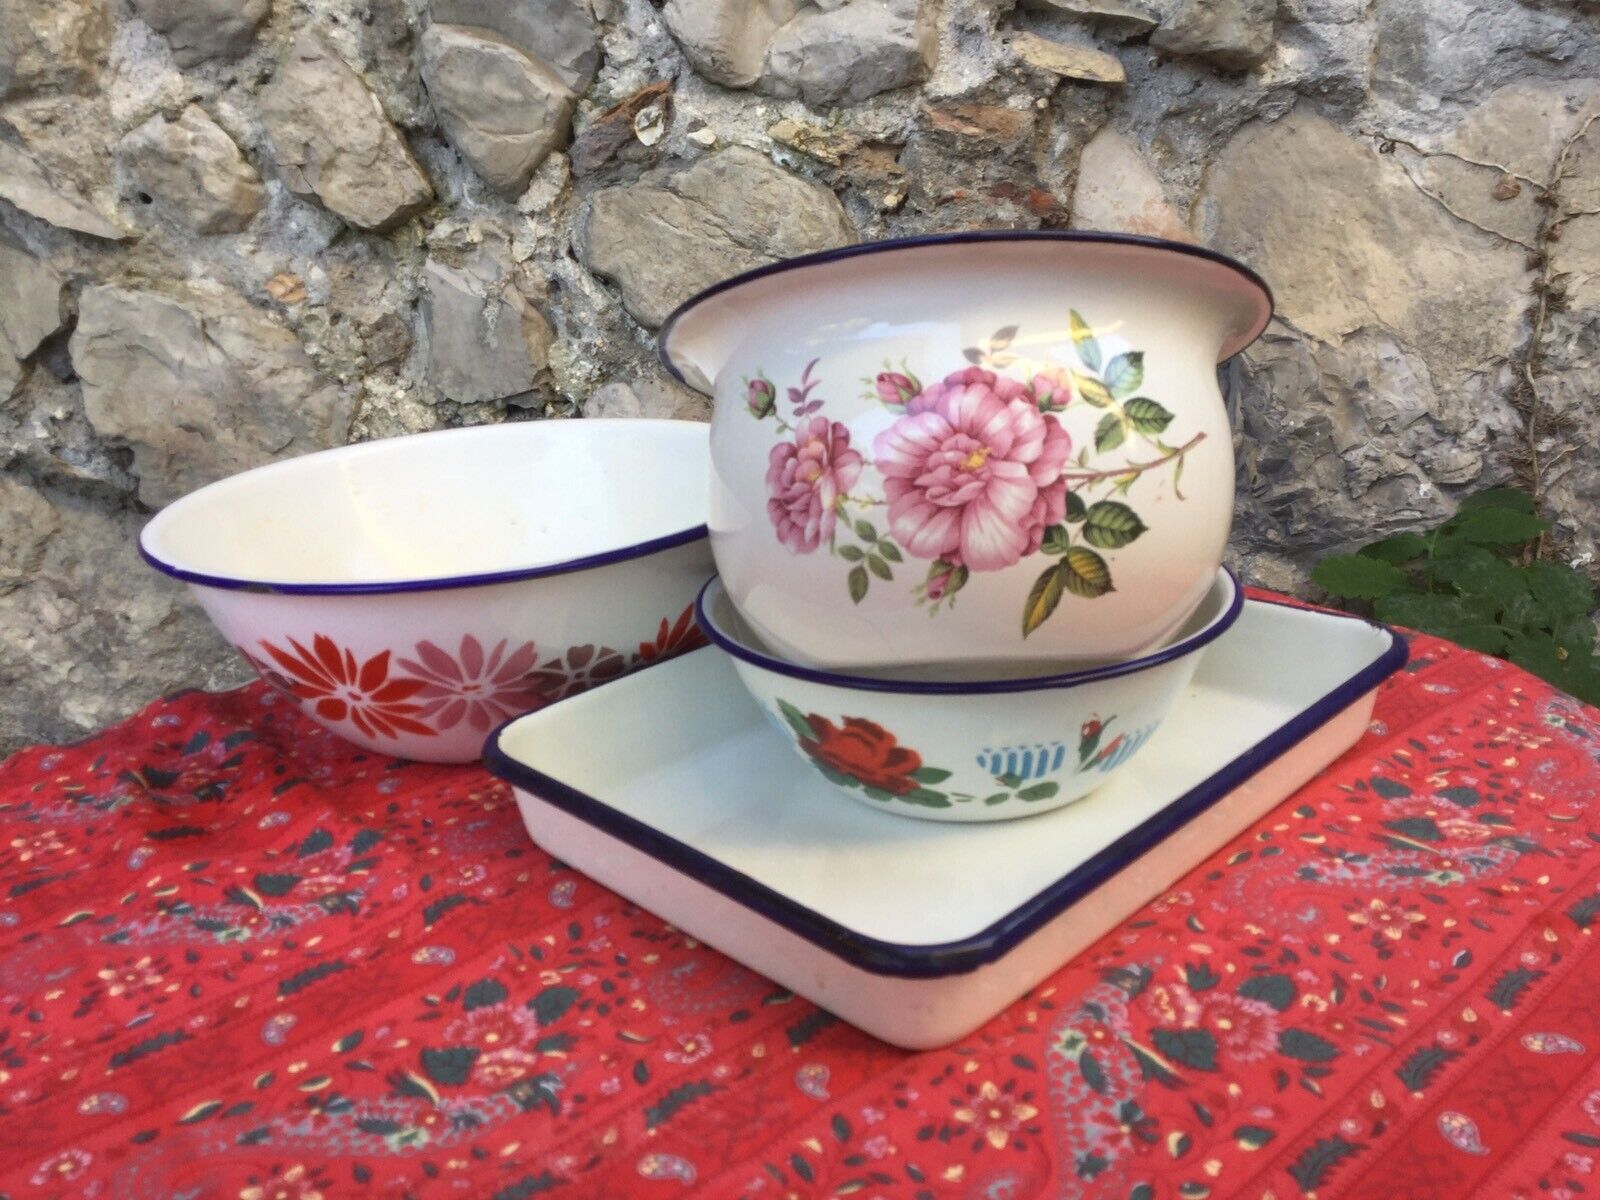 4 Vintage French Enamelware Bowls Tray Enamel Floral Blue Rimmed Graniteware Set